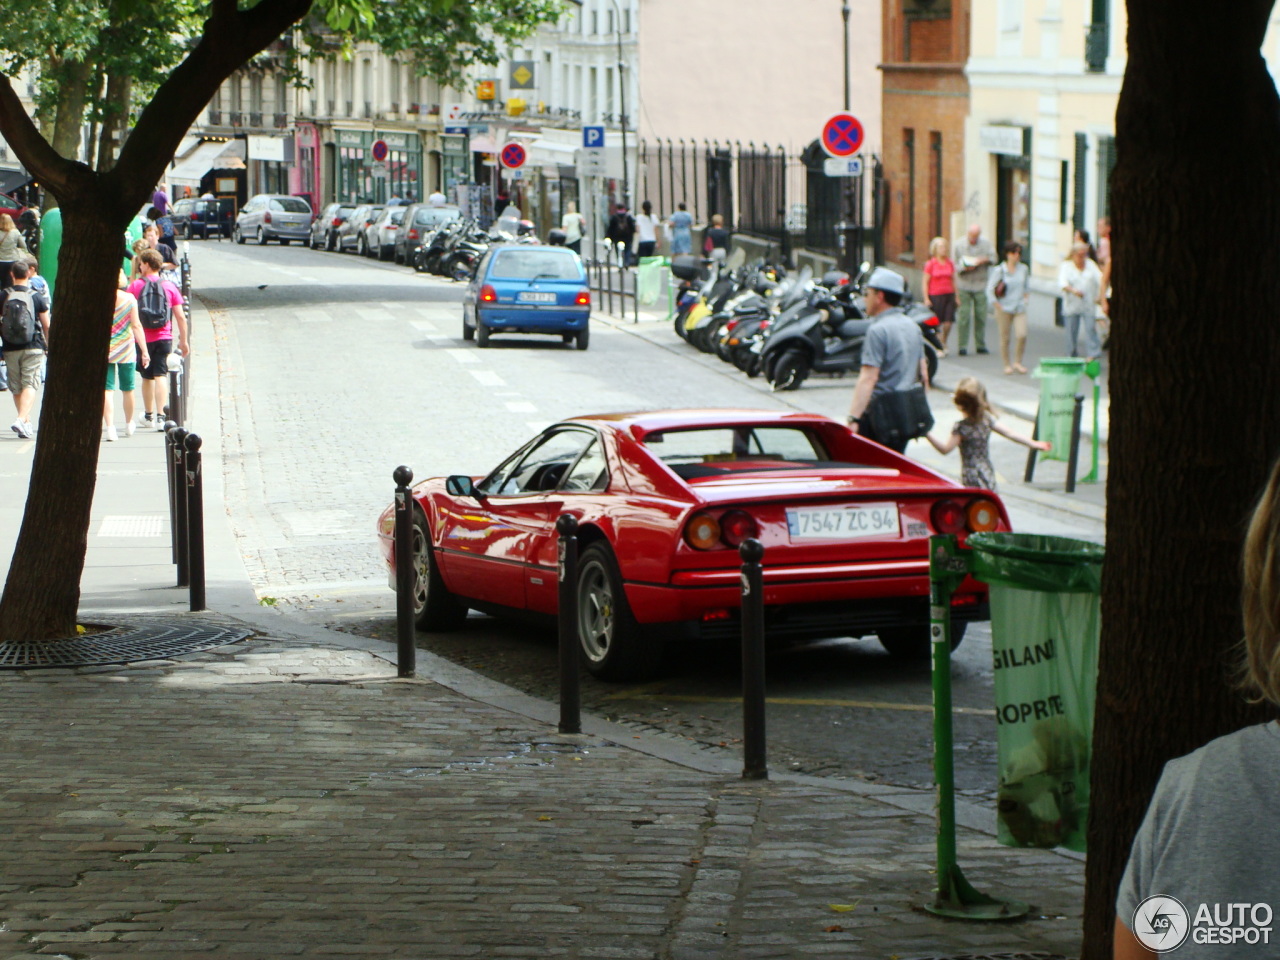 Ferrari 328 GTB